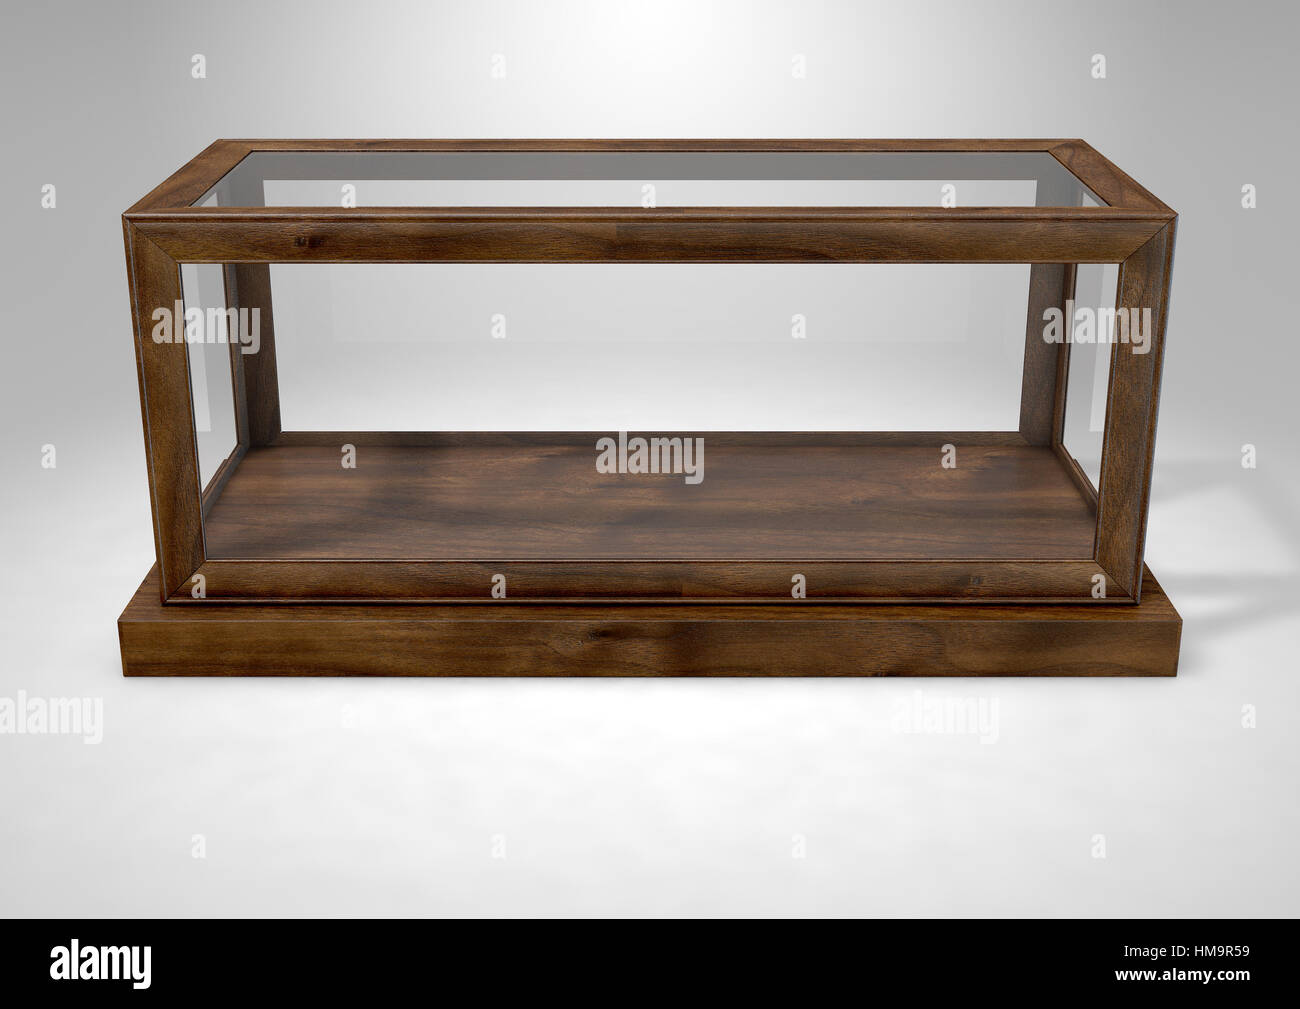 Eine leeres Glas-Vitrine mit Holzsockel und Rahmen auf eine isolierte Studio-Hintergrund - 3D rendering Stockfoto